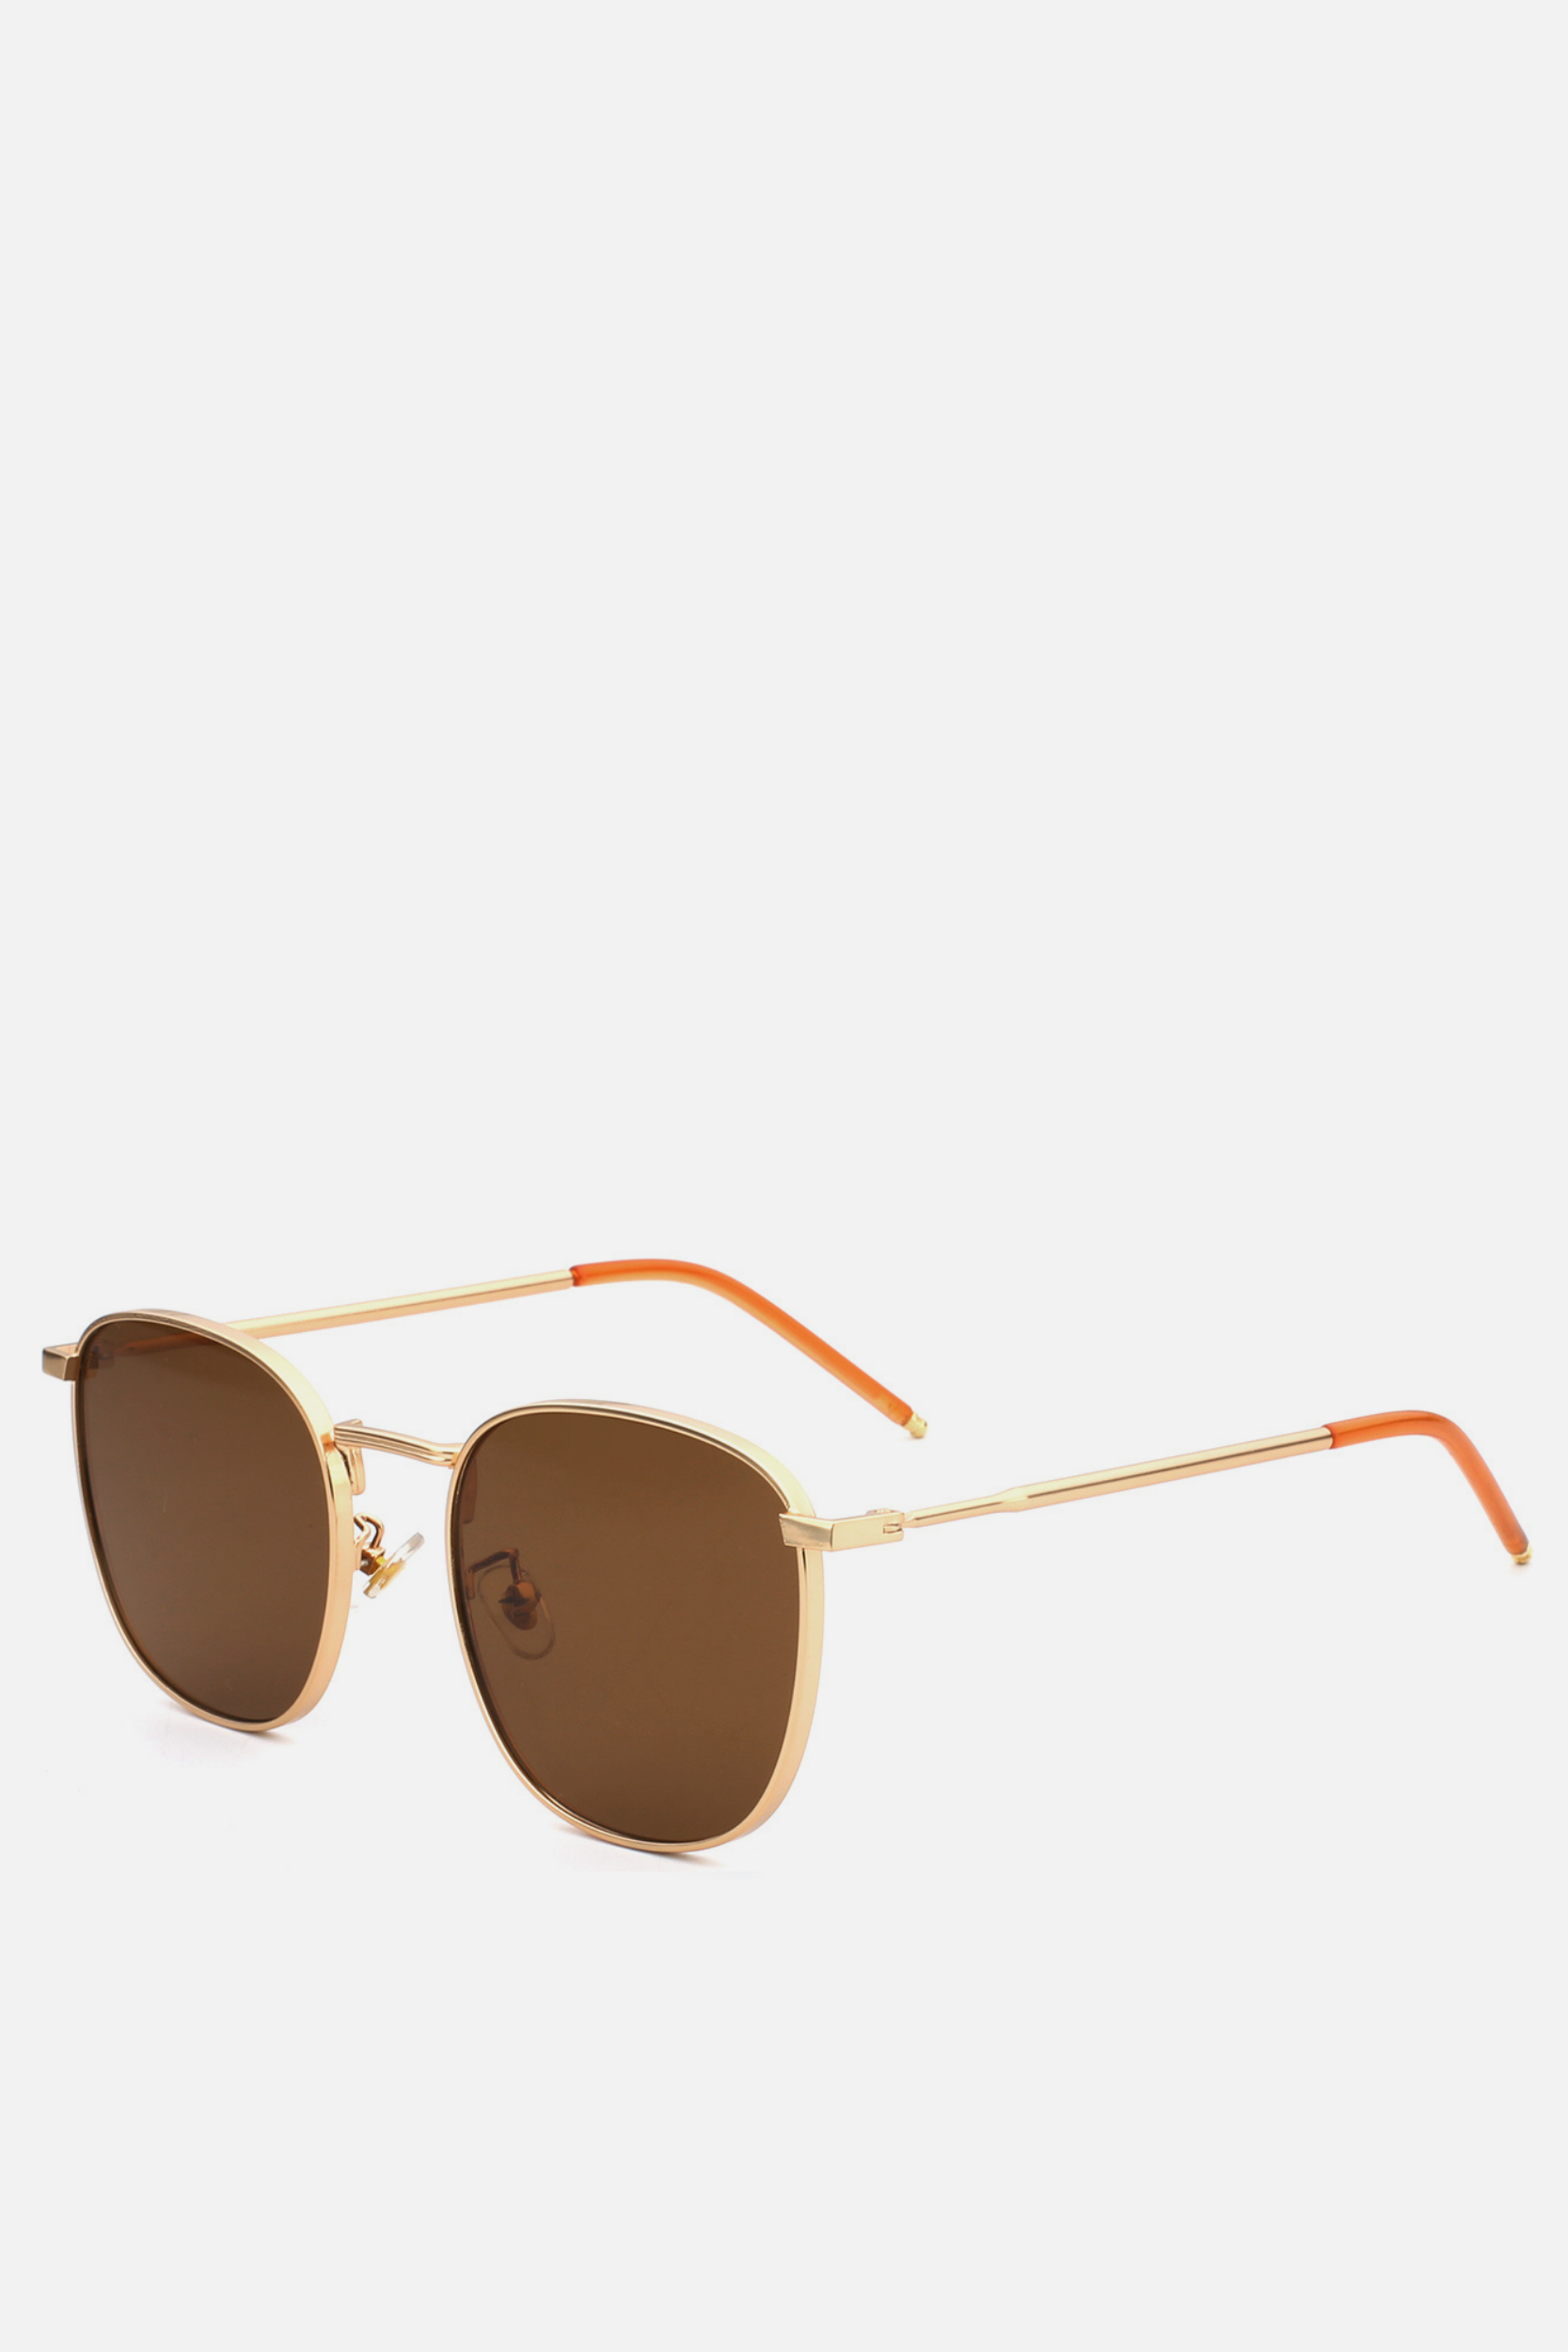 MOROCCO Brown Round Sunglasses